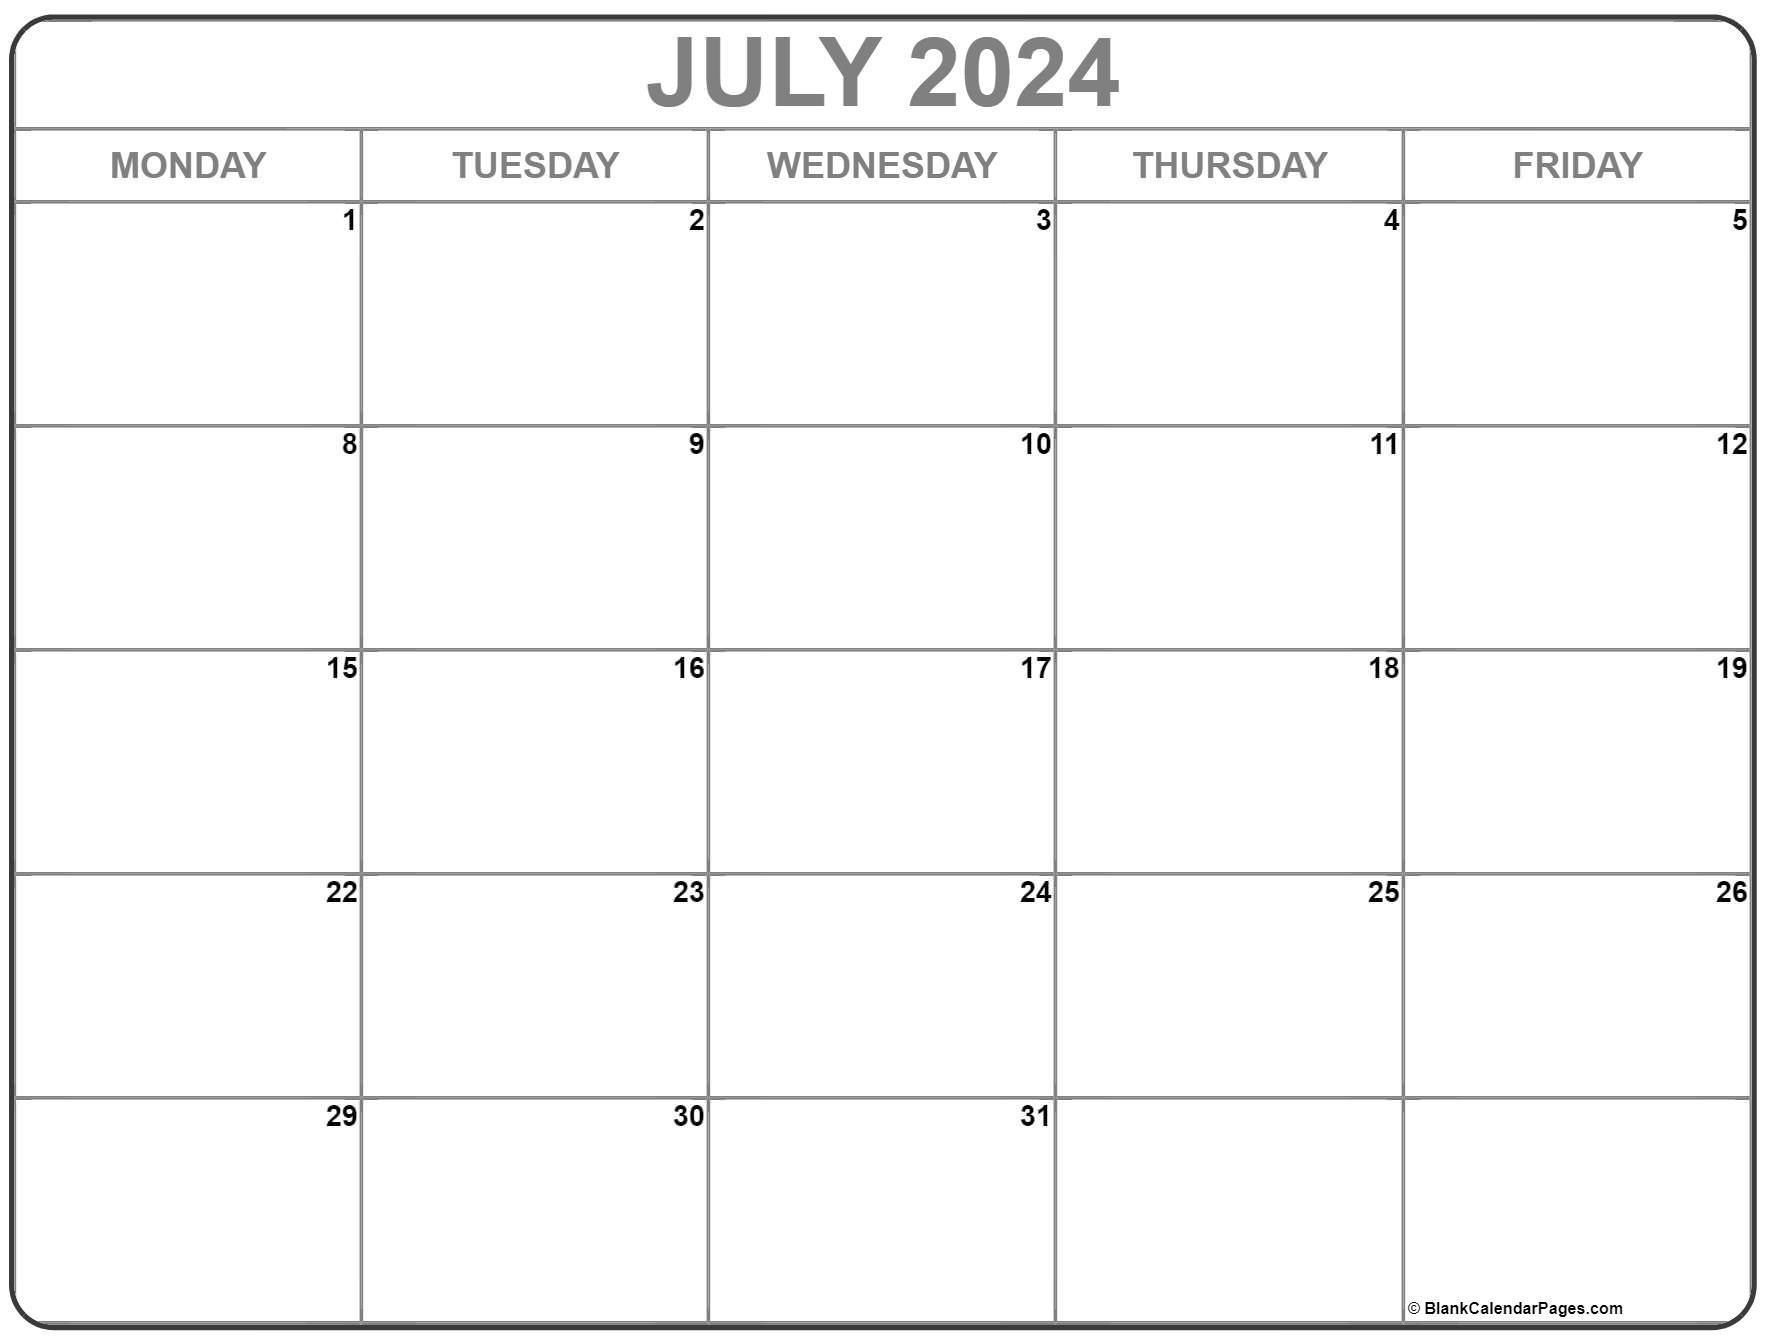 July 2024 Monday Calendar | Monday to Sunday